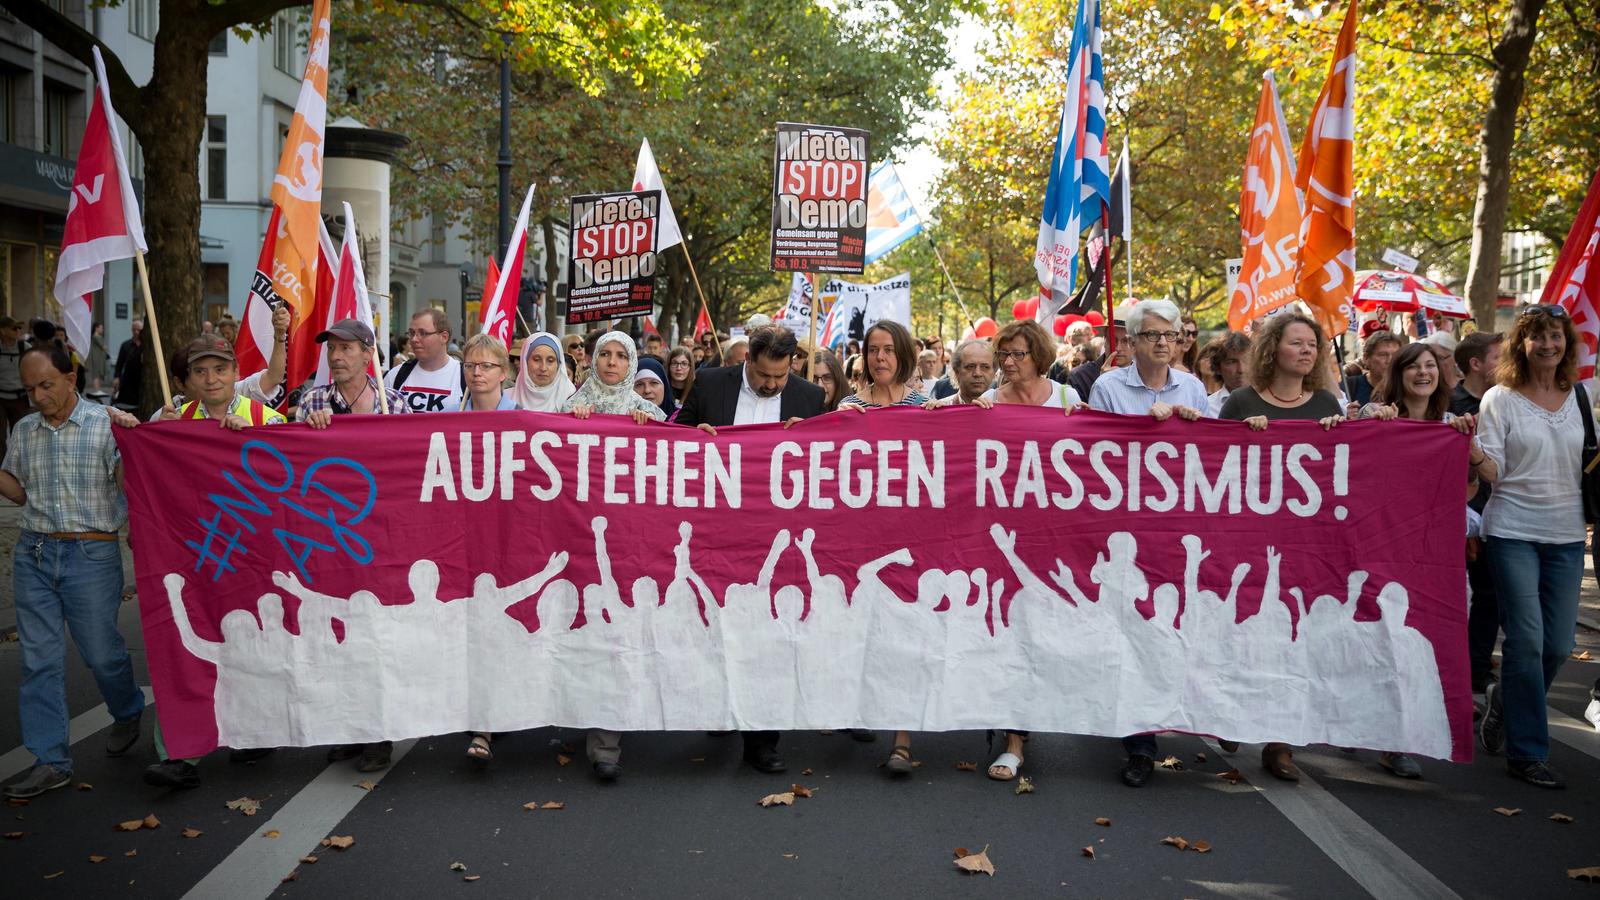 Demo Aufstehen gegen Rassismus Mehrere tausend Menschen beteiligen sich in Berlin an einer Demonstration unter dem Motto Aufstehen gegen Rassismus! gegen Rasissmus und gegen die AfD (Alternative für Deutschland). Local CaptionDemonstration up against